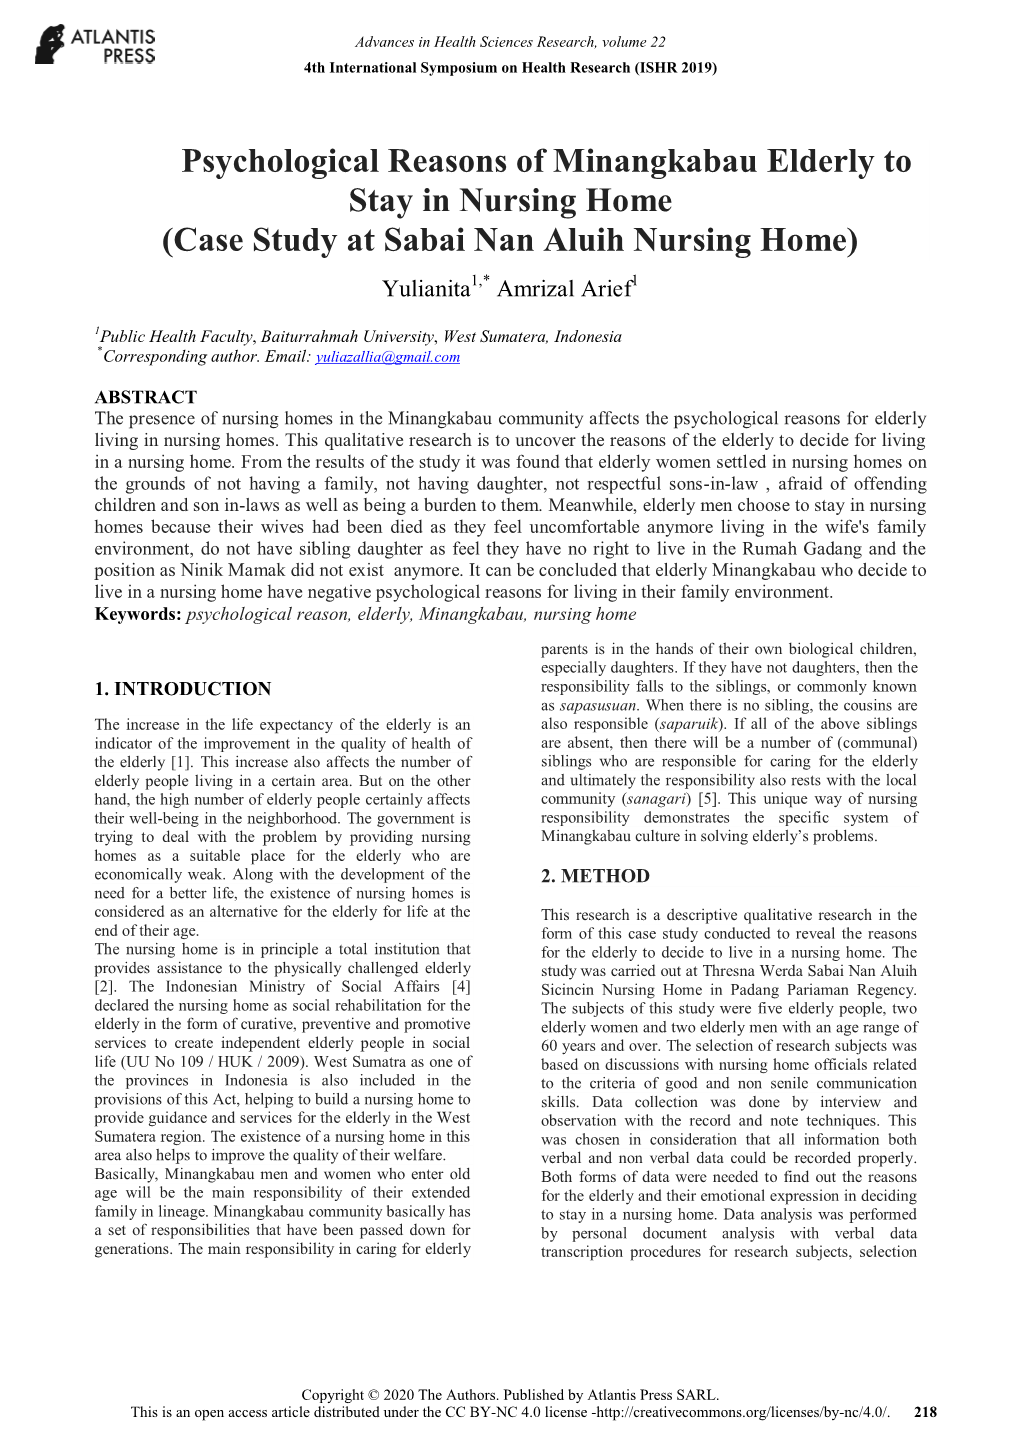 Psychological Reasons of Minangkabau Elderly to Stay in Nursing Home (Case Study at Sabai Nan Aluih Nursing Home) Yulianita1,* Amrizal Arief1